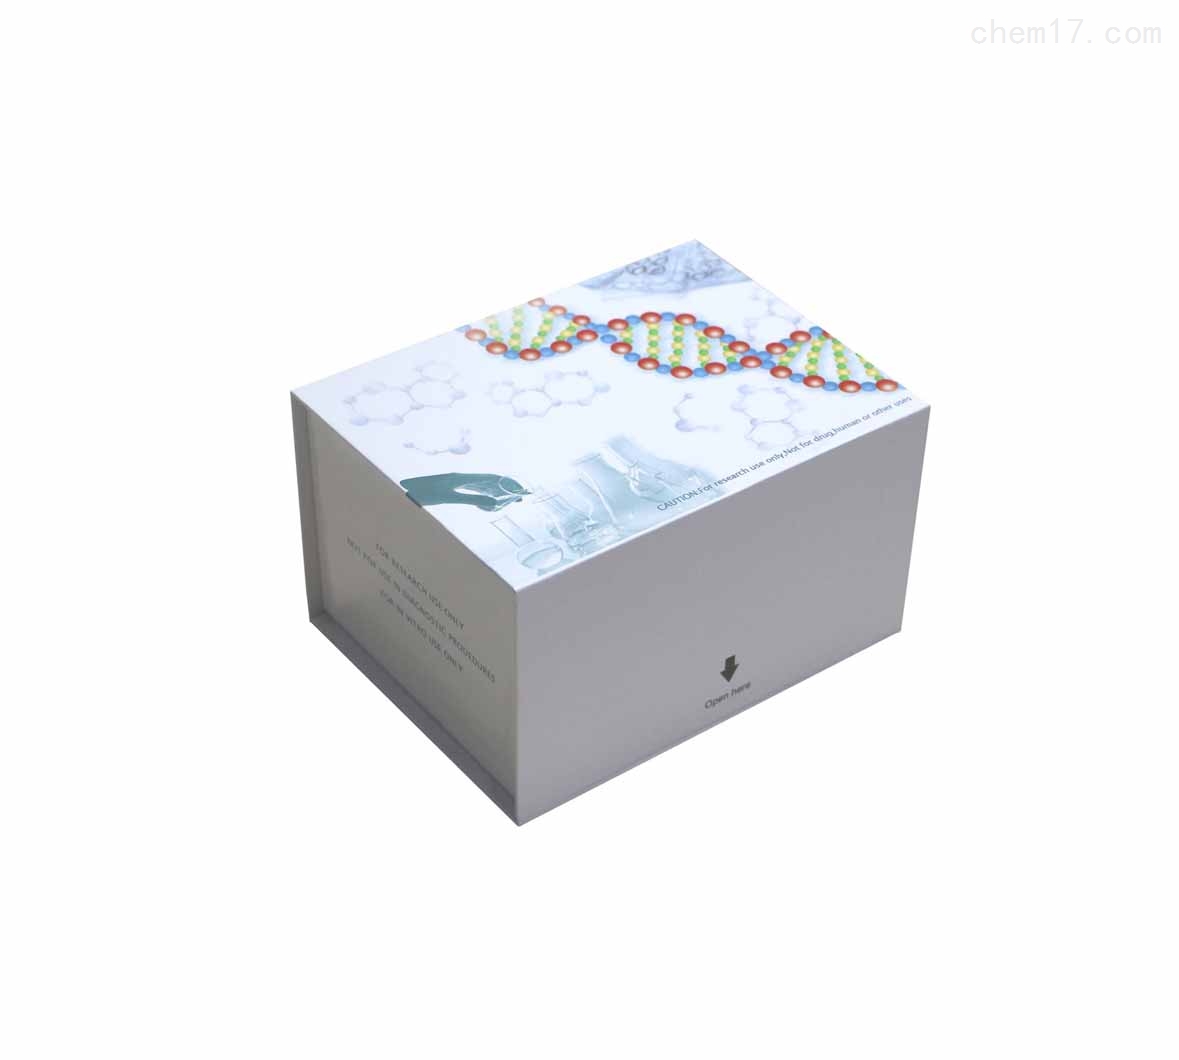 血管成素2(ANGPT2)ELISA试剂盒免费待测